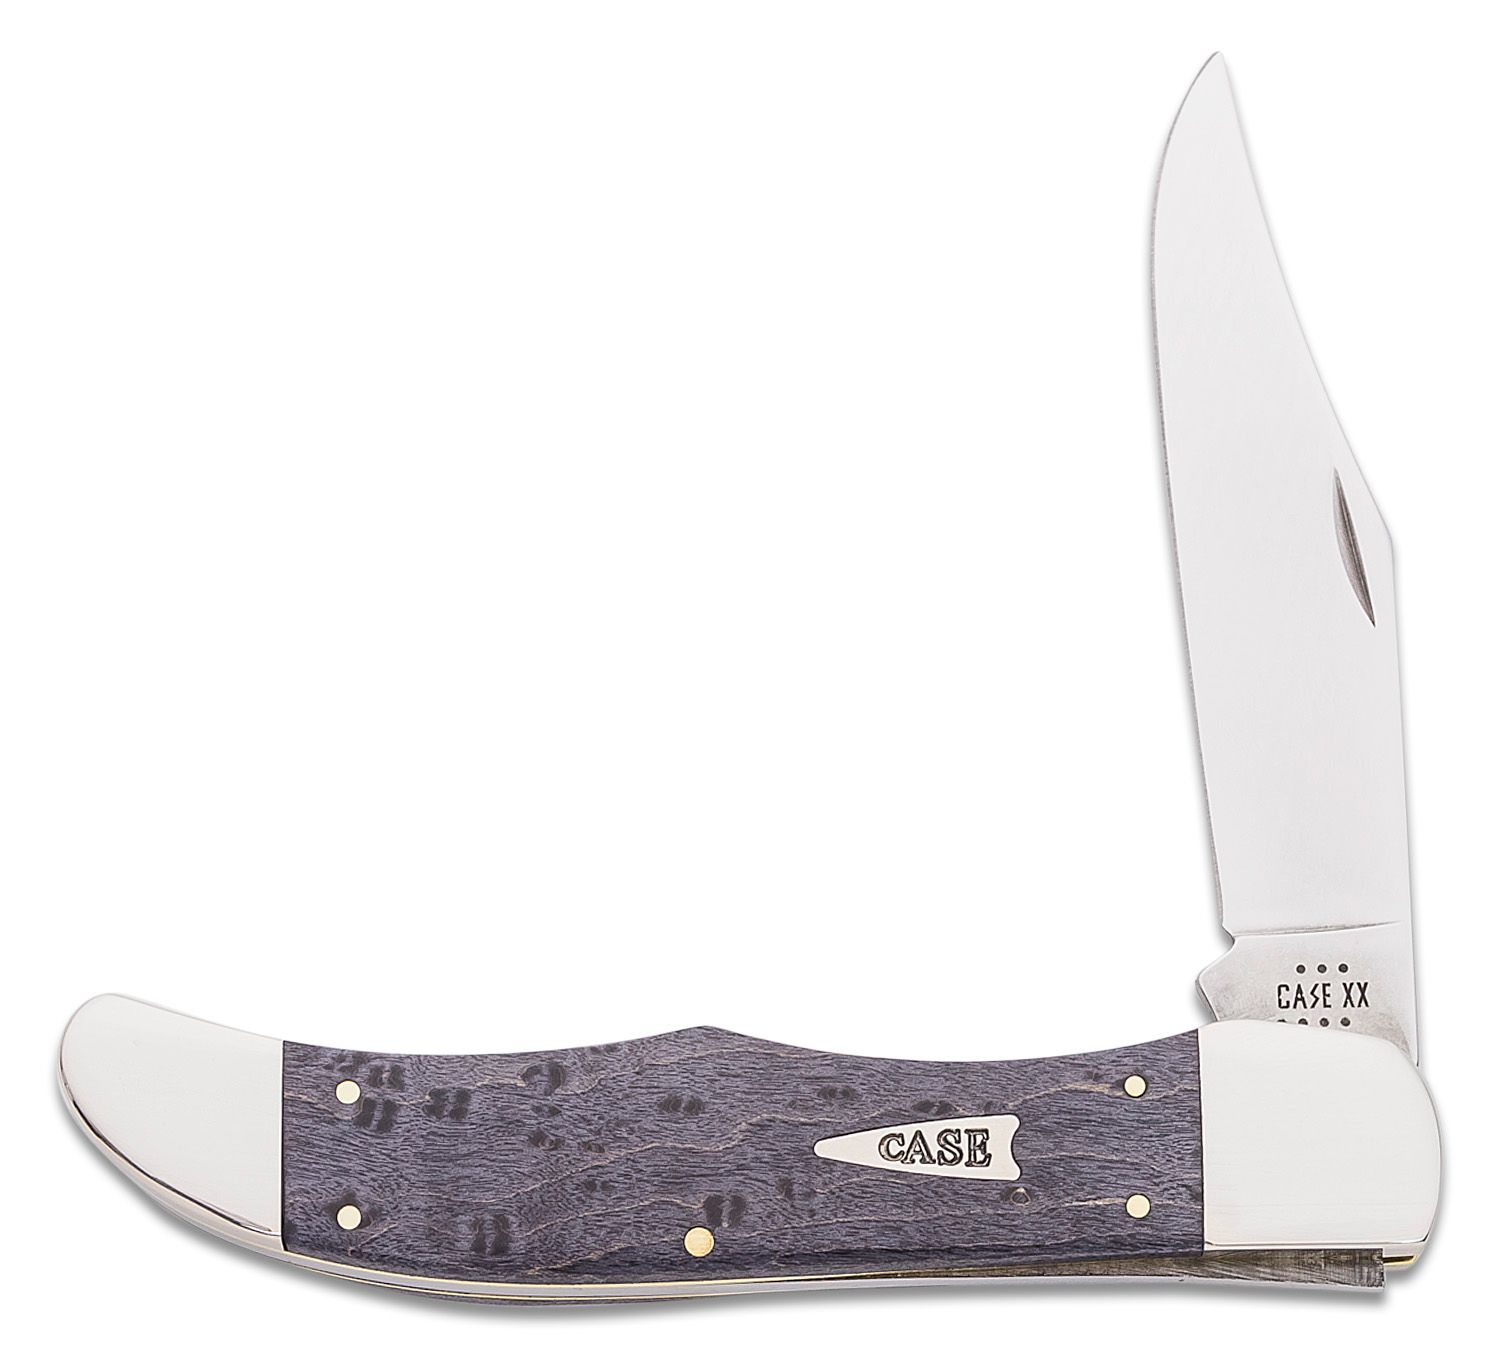 Case Gray Birdseye Maple Folding Hunter Knife 5.25 Closed (7165 SS) -  KnifeCenter - 11013